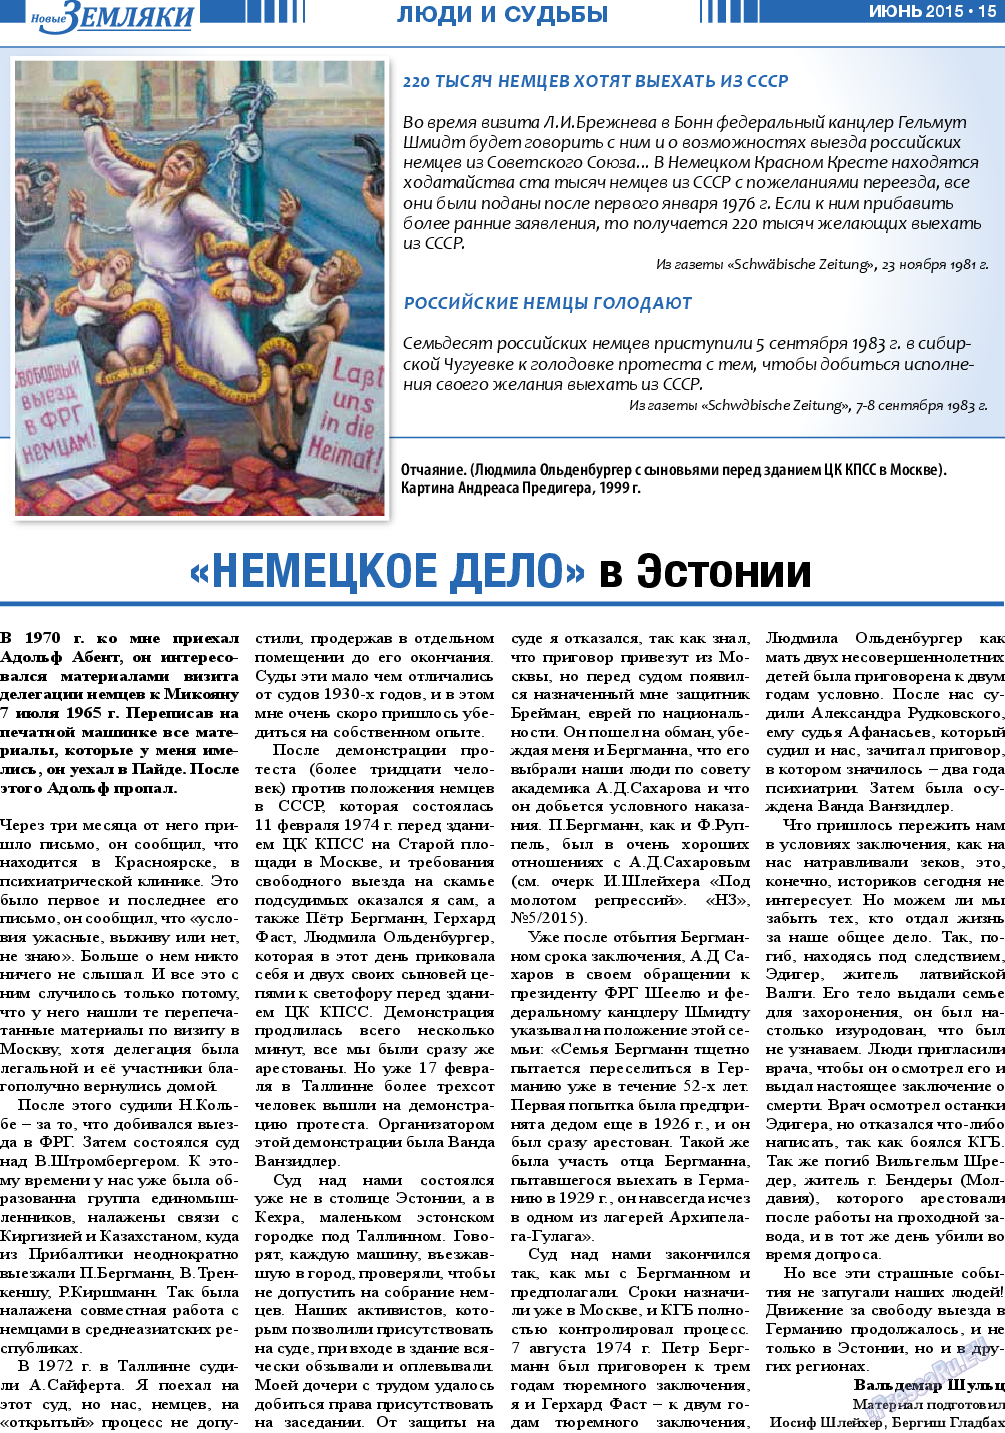 Новые Земляки (газета). 2015 год, номер 6, стр. 15